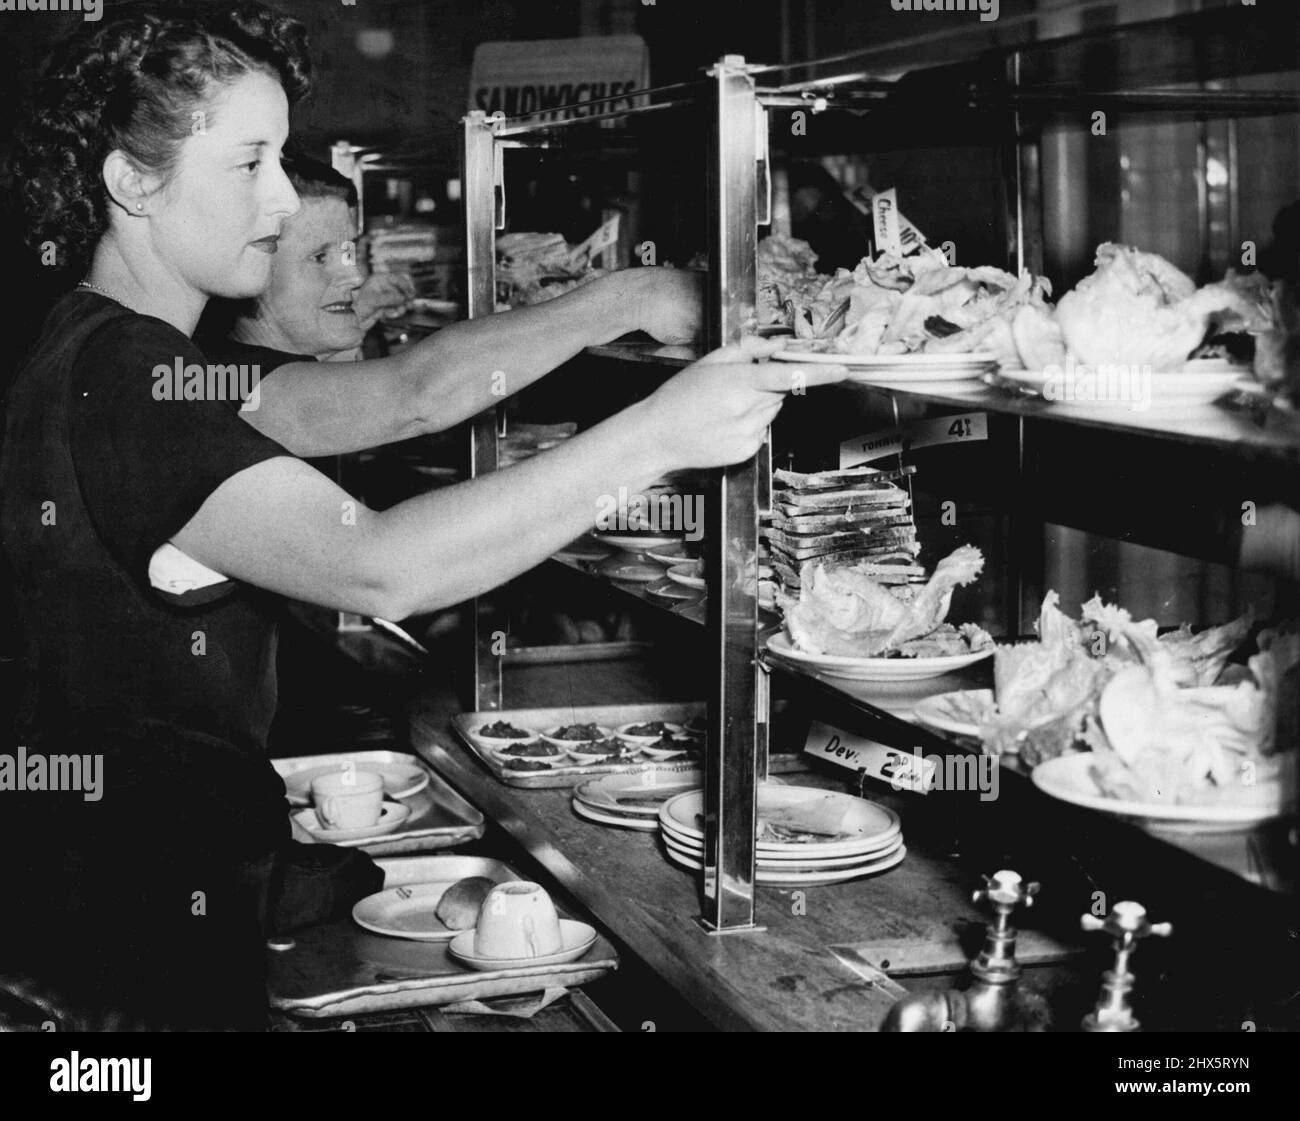 Mittagspause und unsere Verkäuferin nimmt gerne eine kurze Pause ein, entspannt ihre Schuhe ein wenig, während sie sich zum Essen hinsetzt. 22. Dezember 1949. Stockfoto